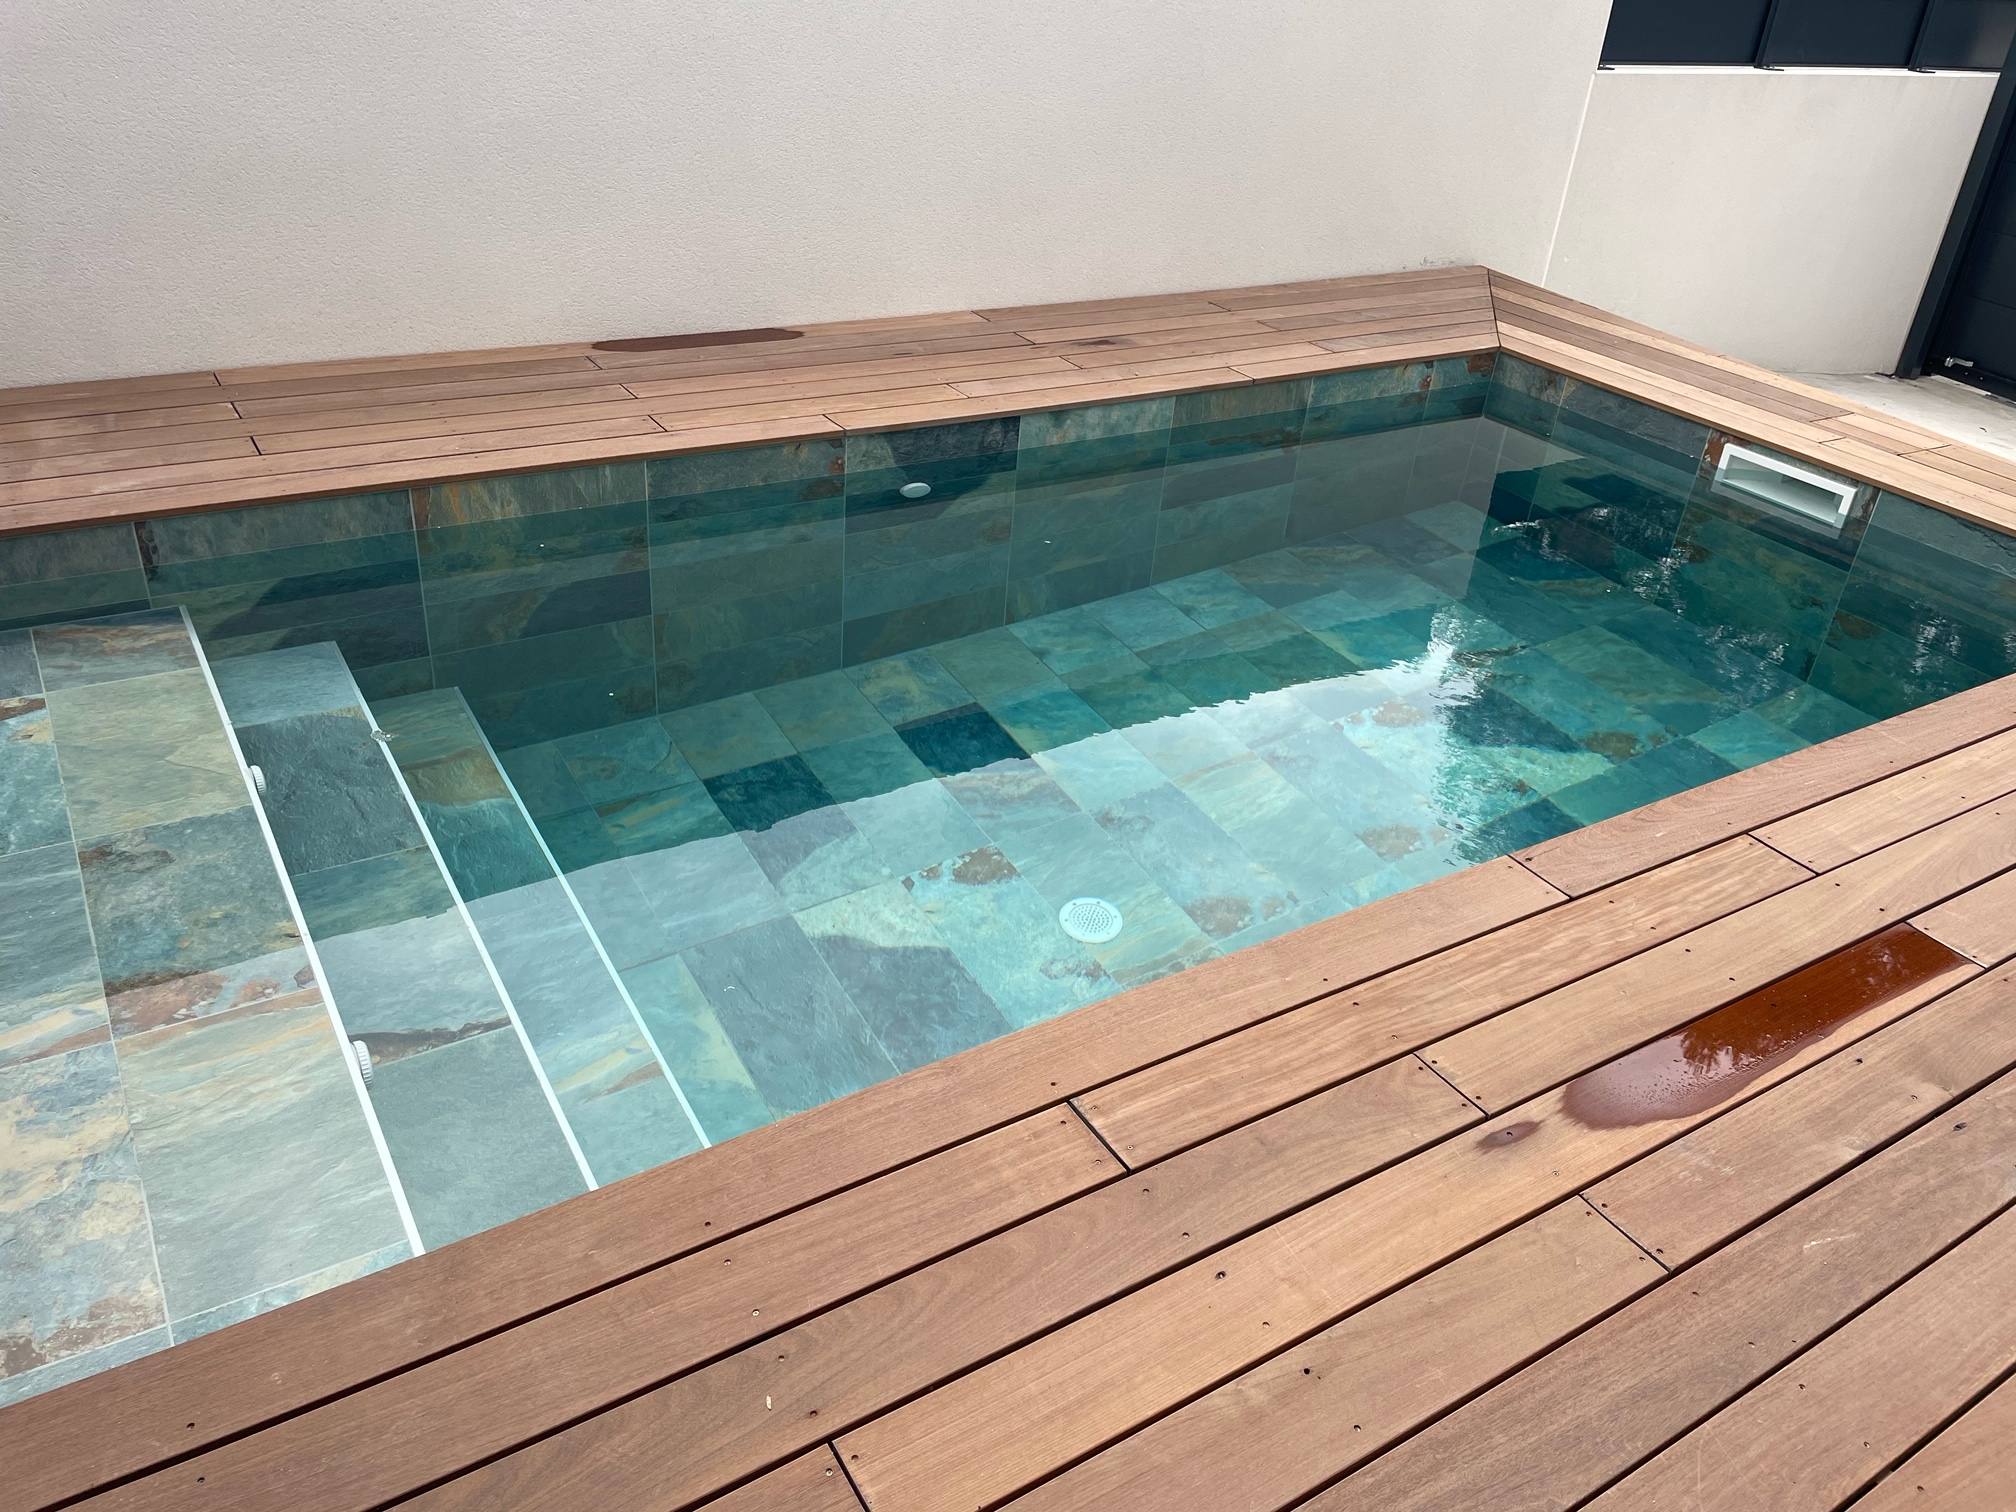 Carrelage piscine effet pierre naturelle OXFORD BALI VERT 30x60 cm R9 - 1.26 m² - zoom